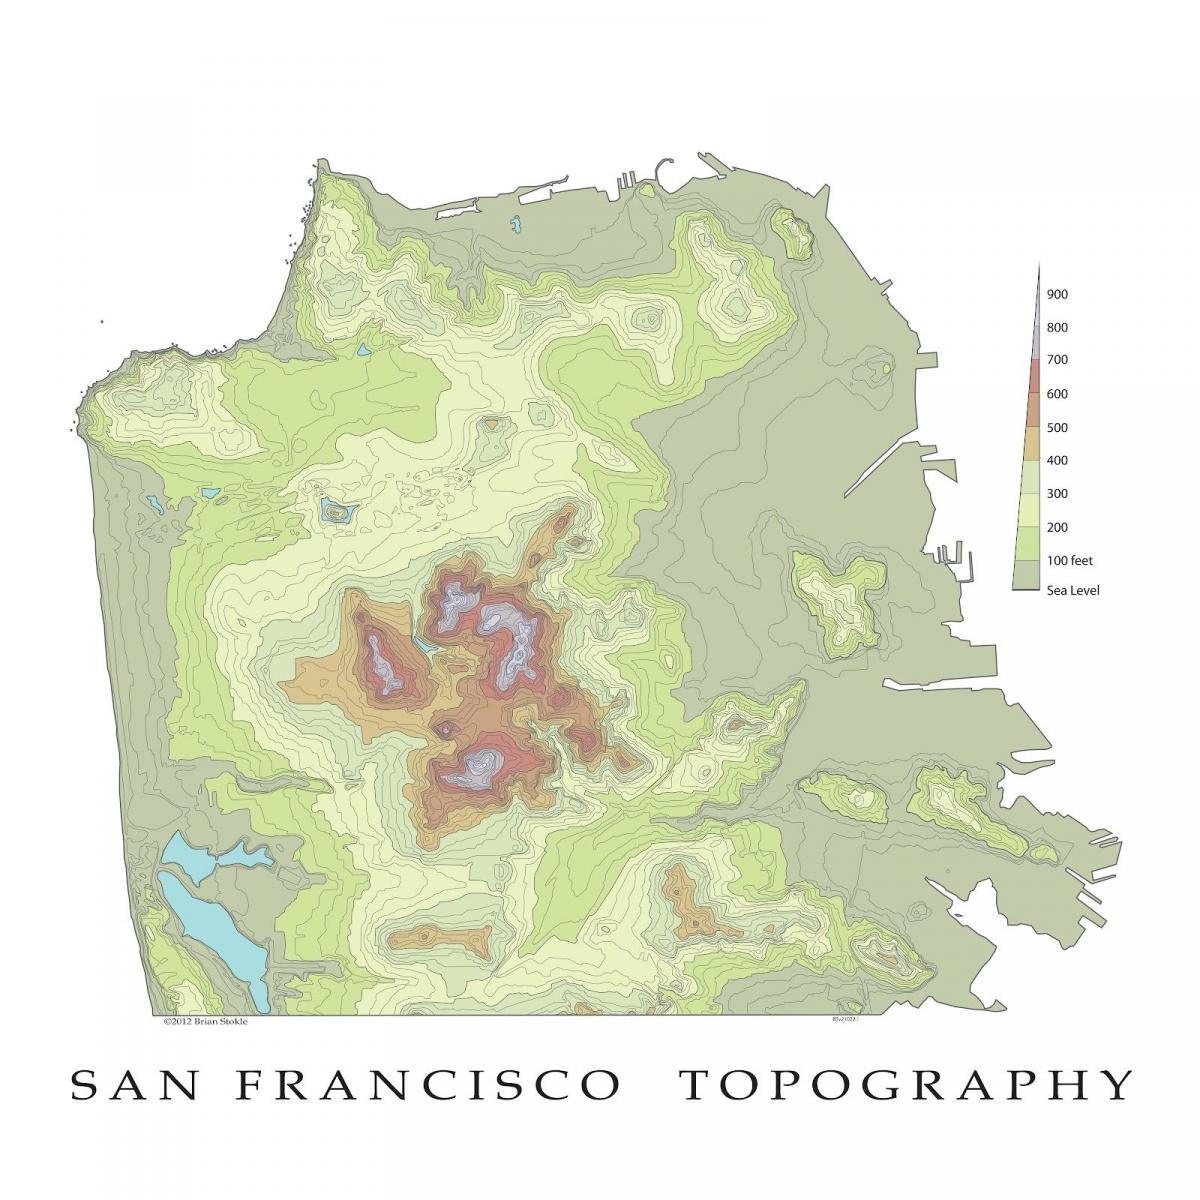 Σαν Φρανσίσκο τοπογραφικός χάρτης